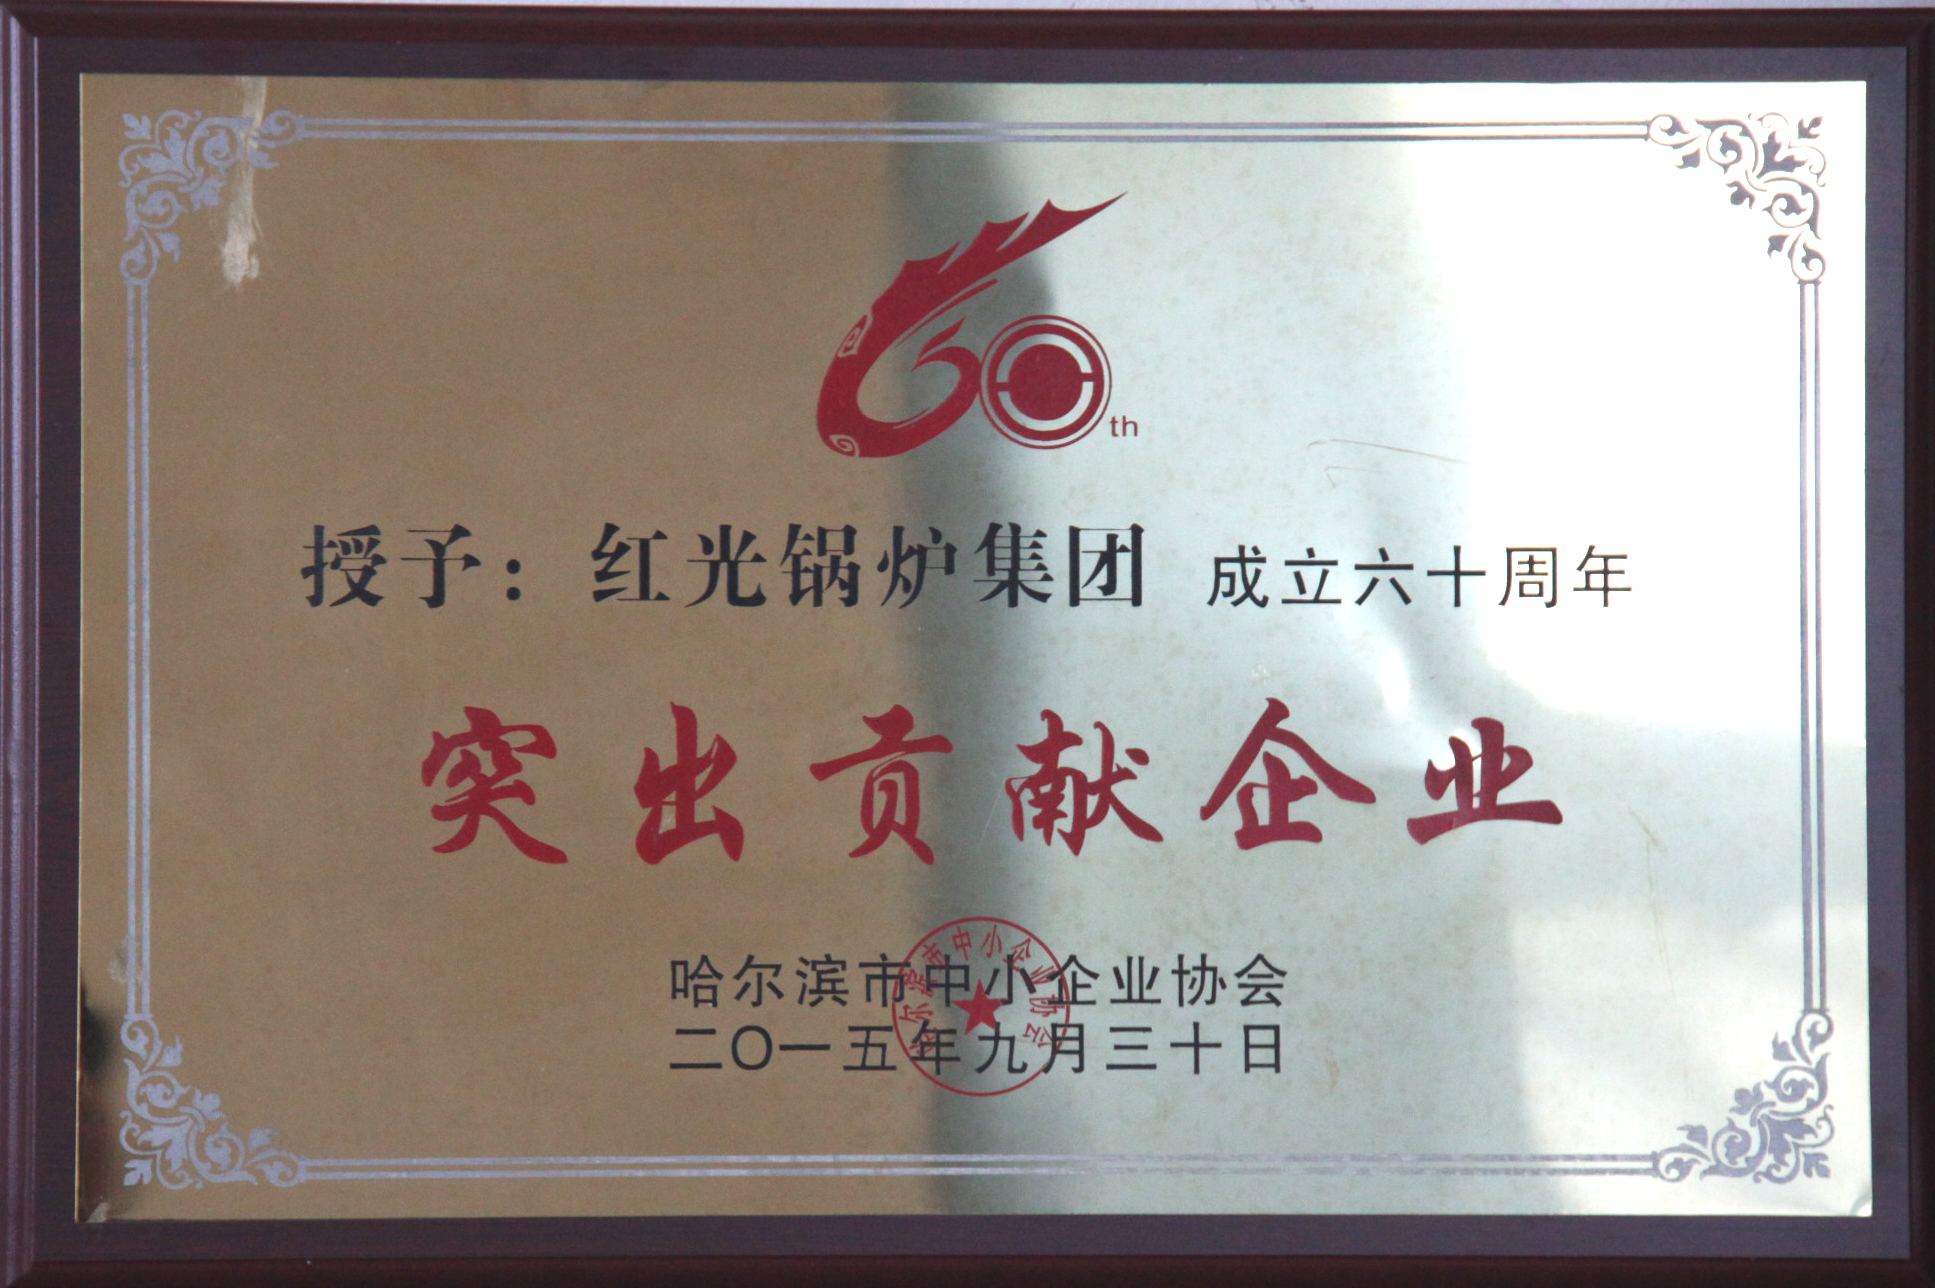 红光锅炉集团成立60周年突出贡献企业